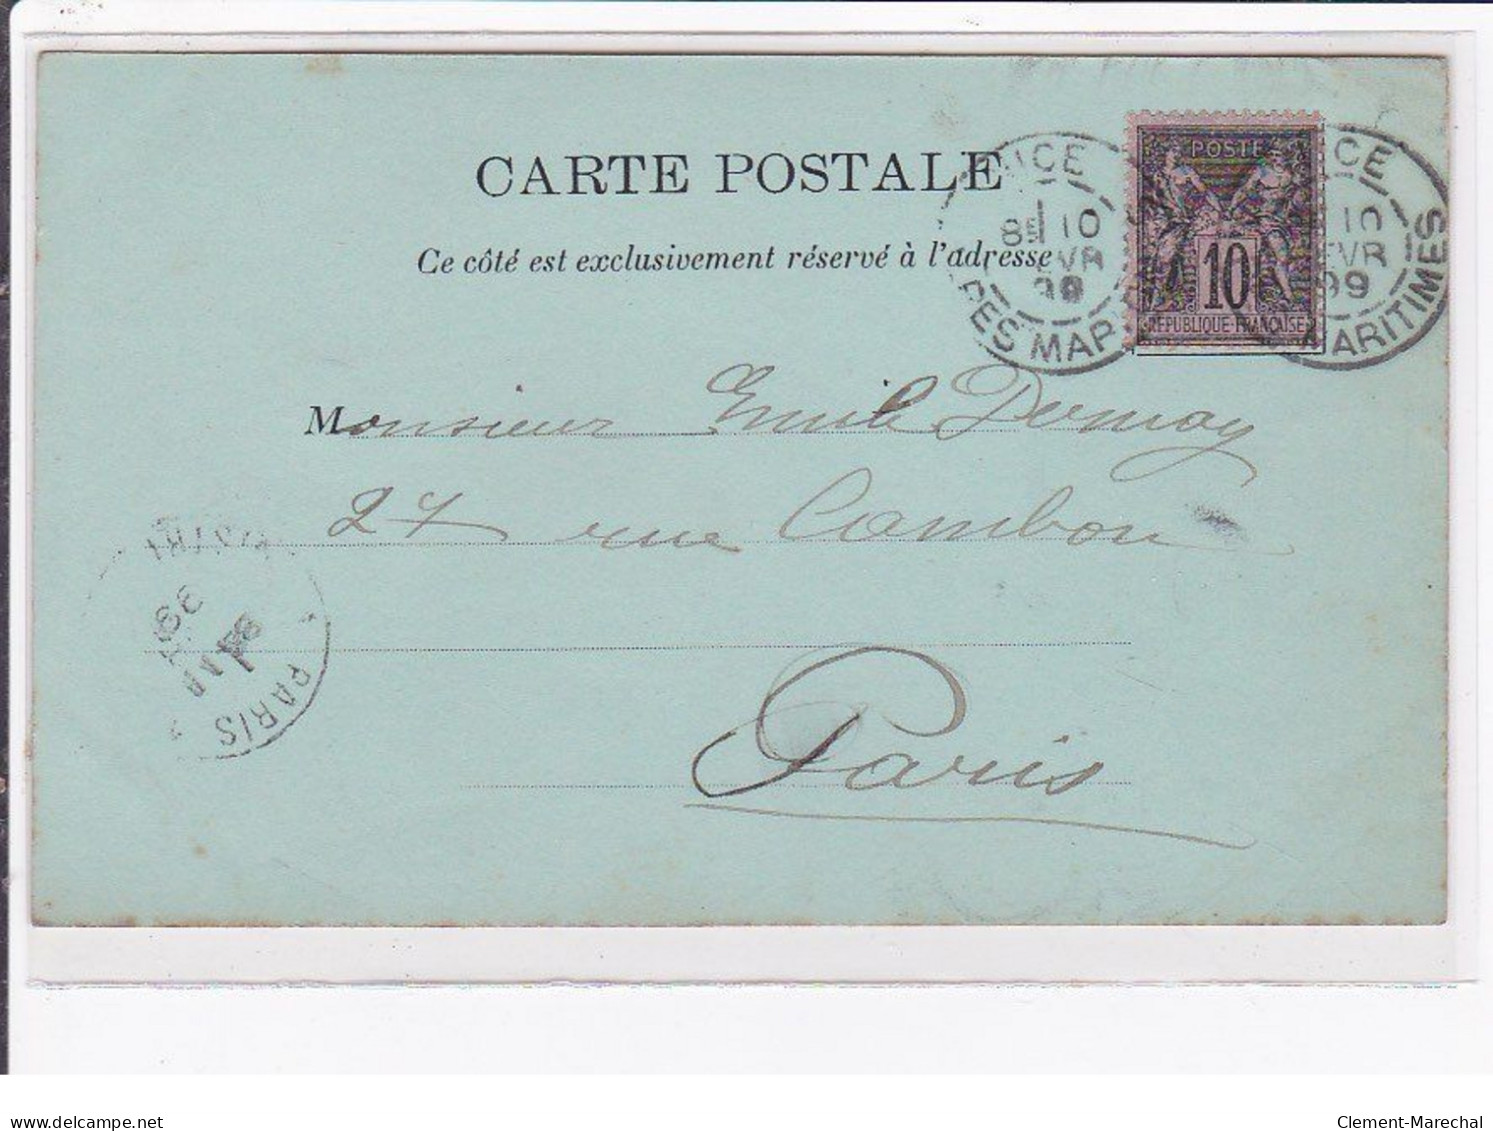 Jean de CALDAIN : lot de 8 cartes postales de 1898 (femmes) autographe de Raoul THOMEN - bon état général